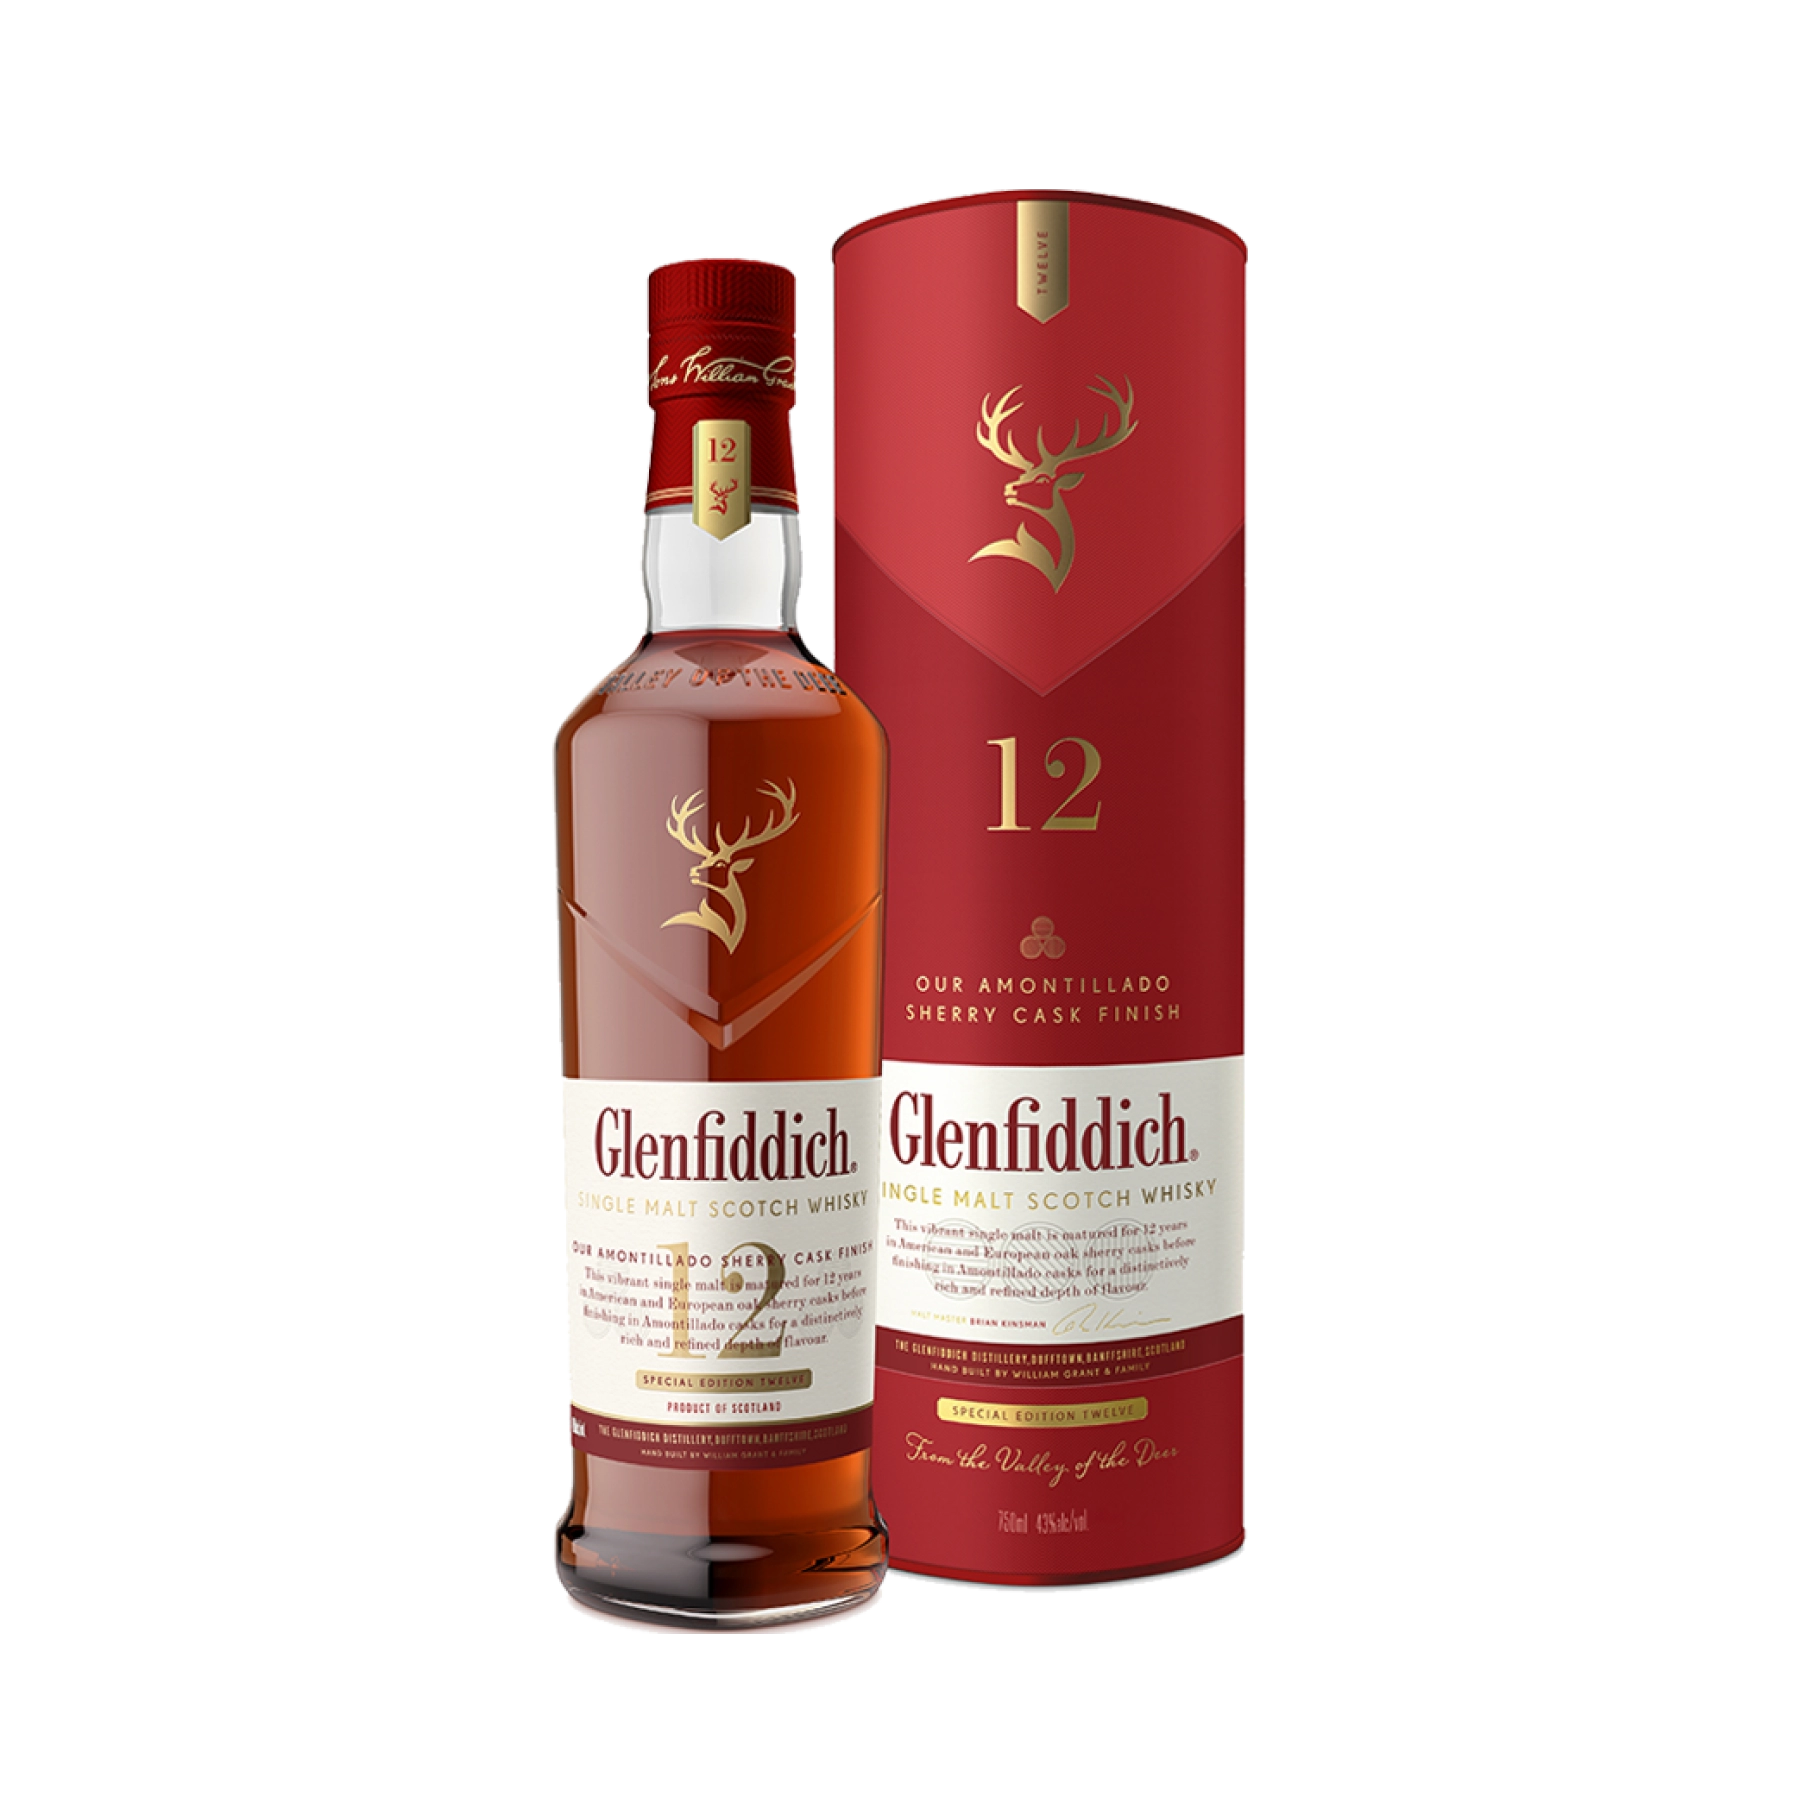 Rượu Whisky Glenfiddich 12 Year Old Amontillado Sherry Cask Finish